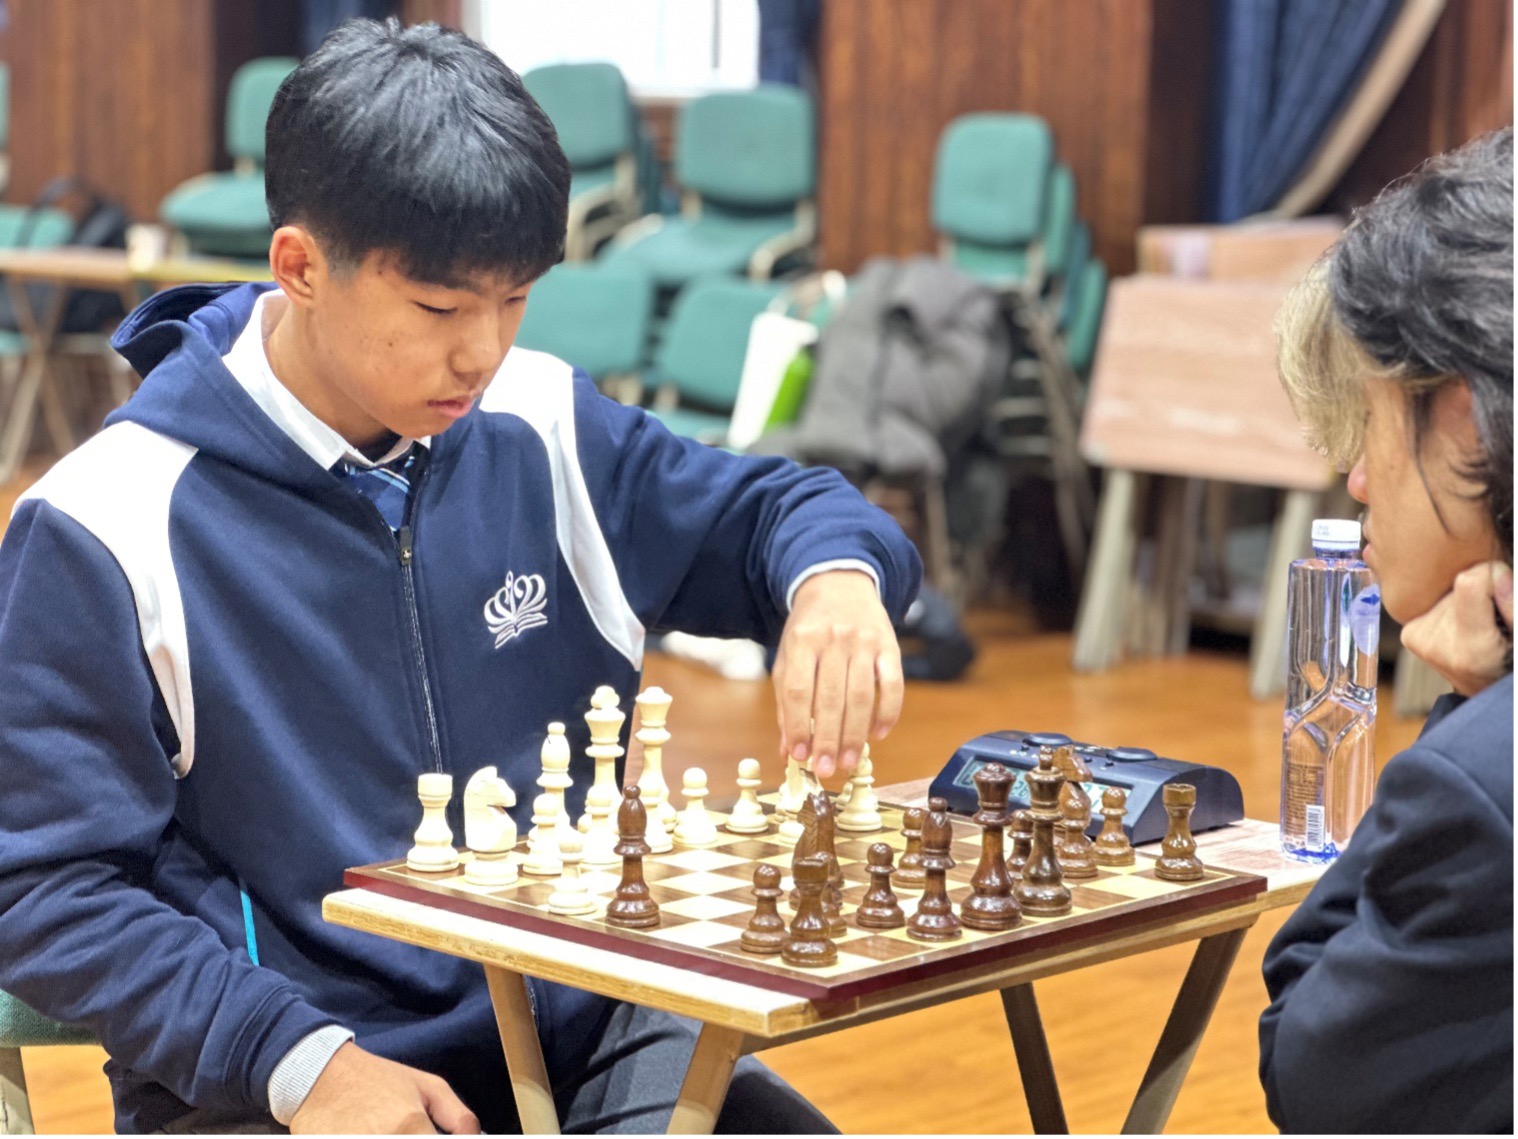 乐盟国际象棋俱乐部参加CISA国际象棋锦标赛 - Chess Club Dominates CISA Chess Tournament